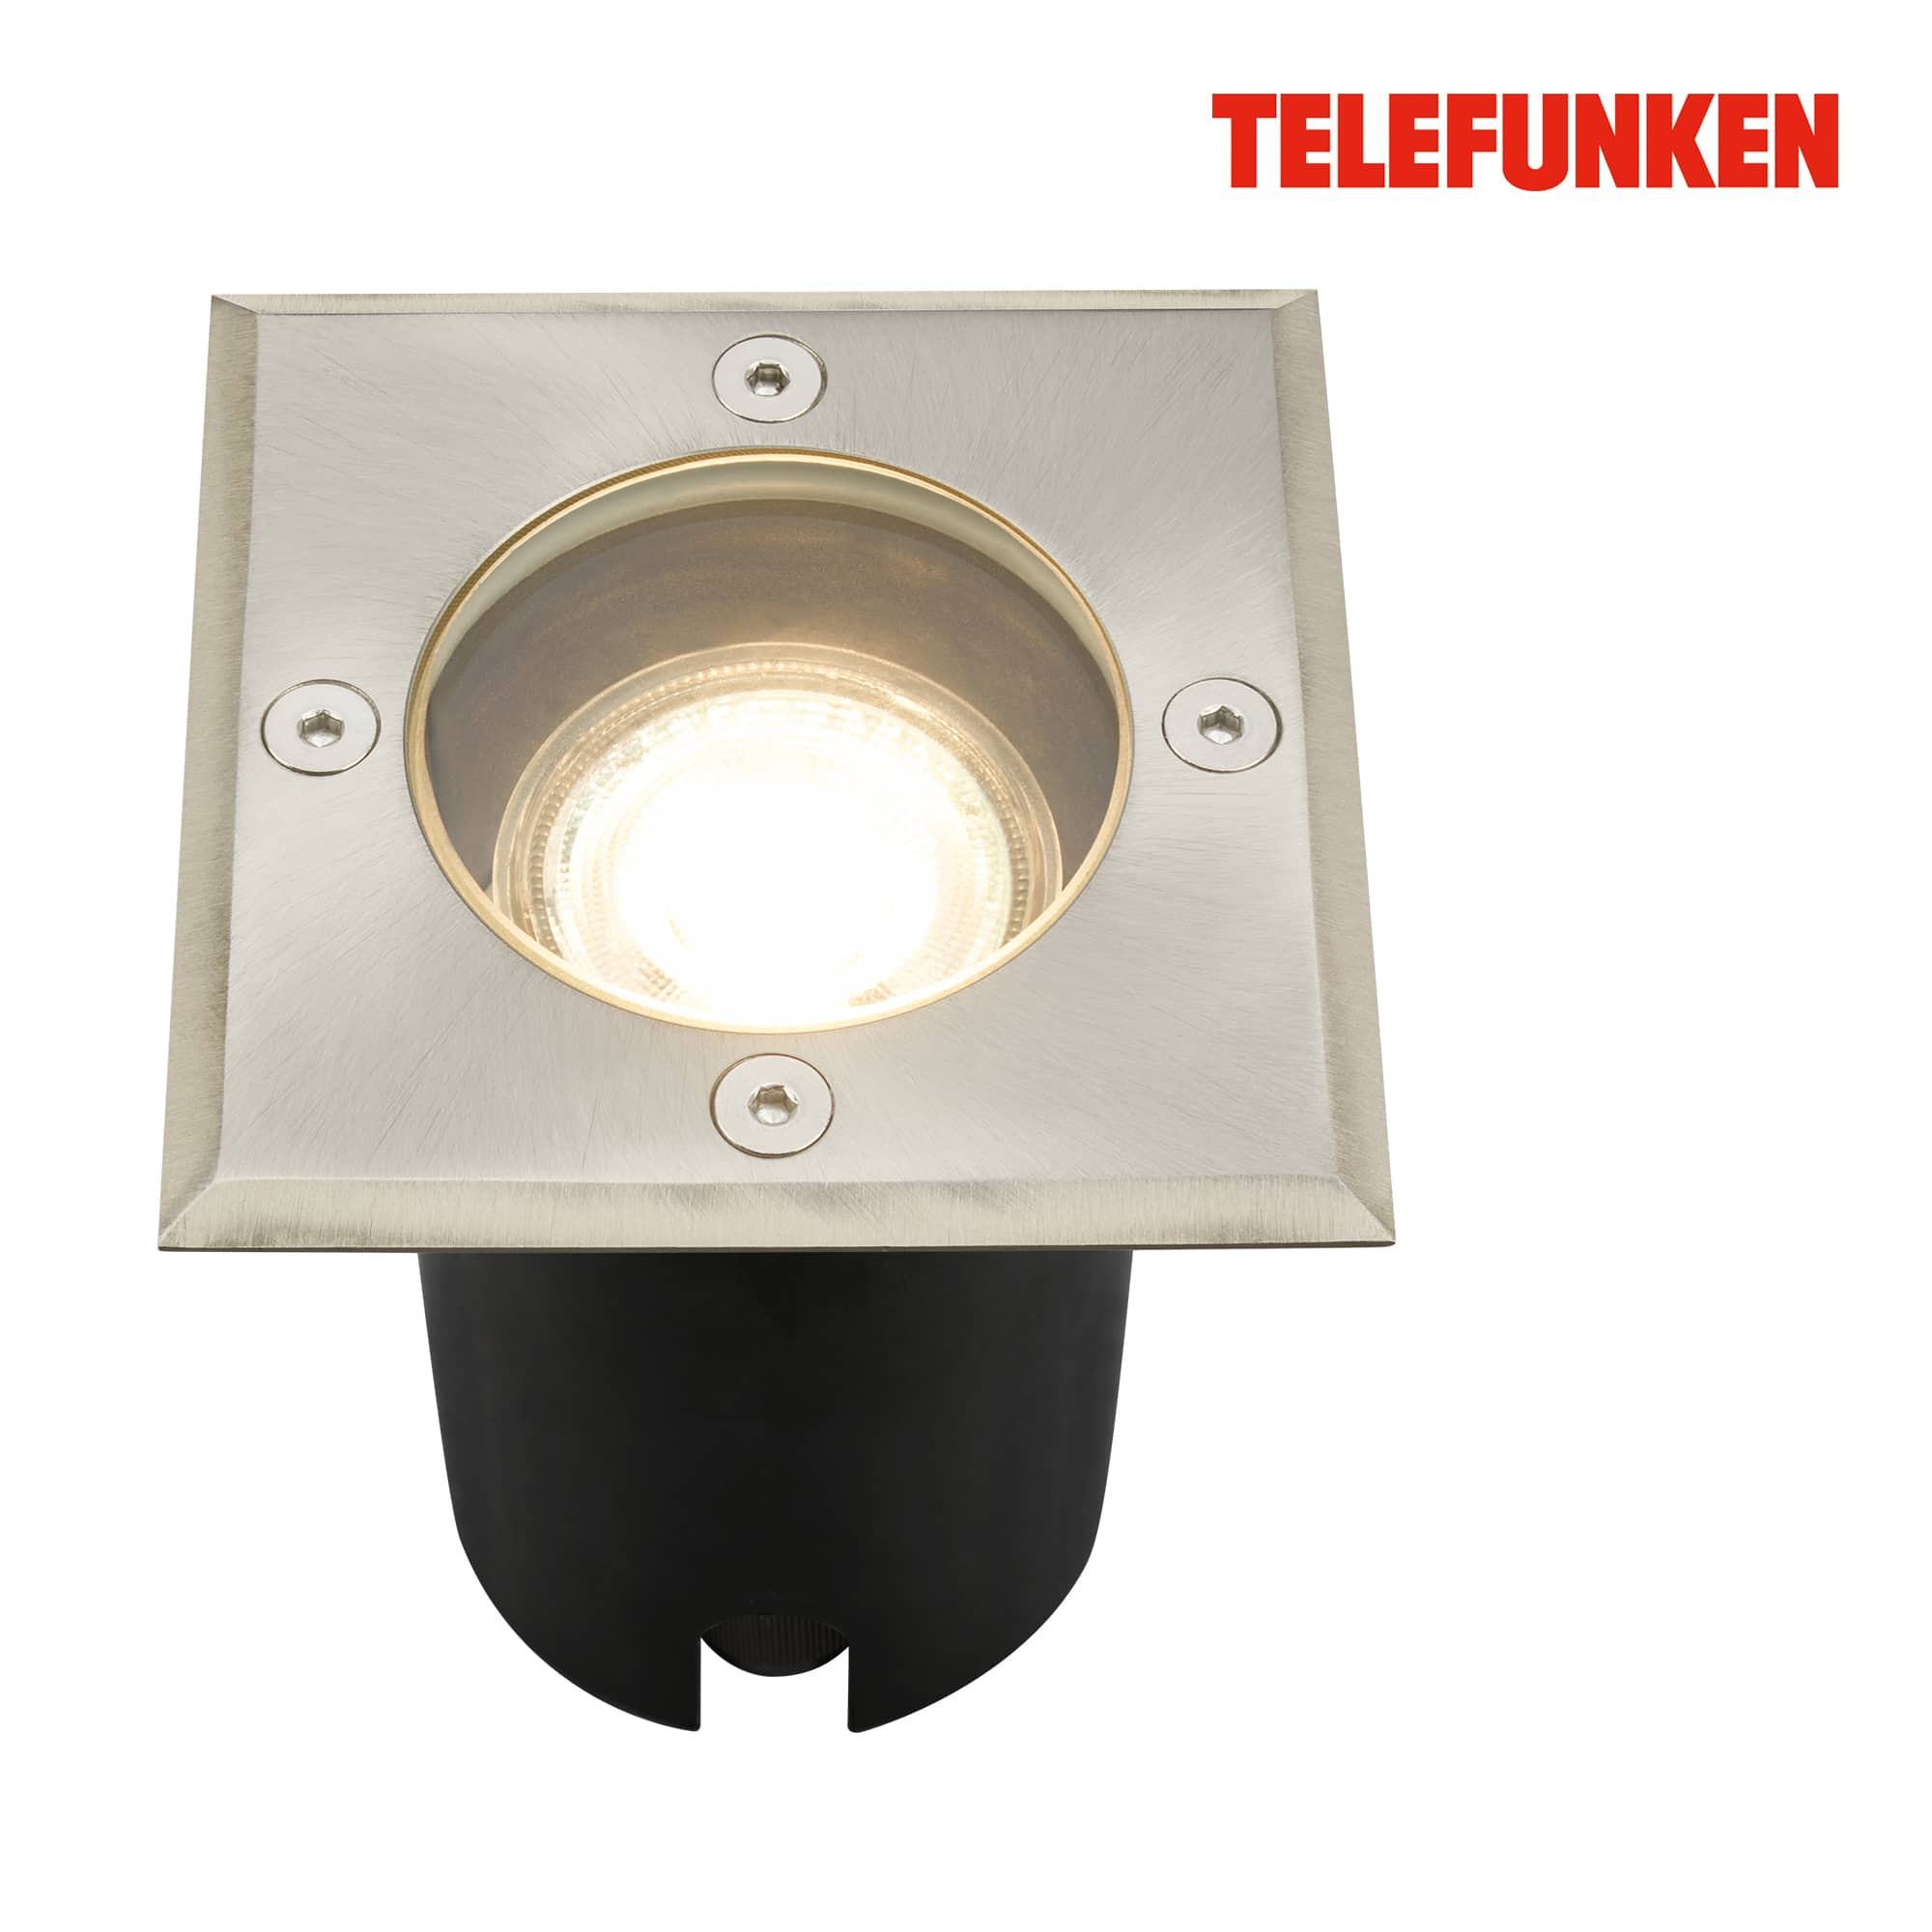 Telefunken luce da incasso, impermeabile IP67, vetro temperato